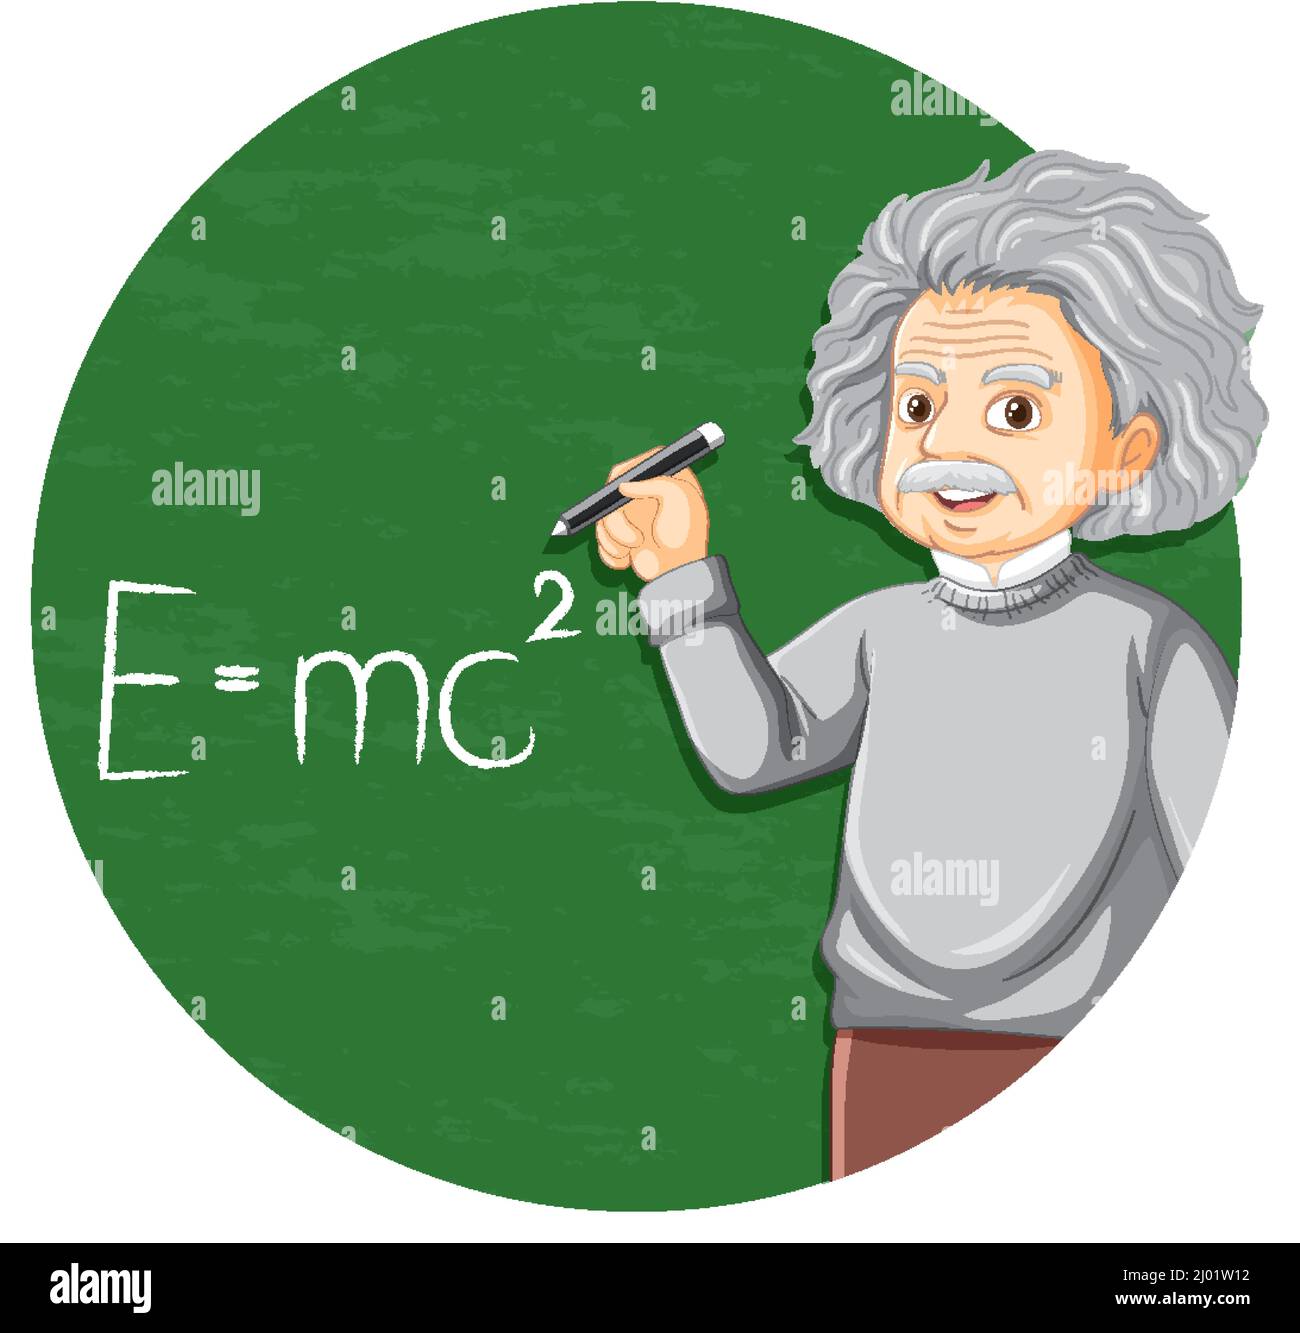 Portrait of Albert Einstein in cartoon style illustration Stock Vector